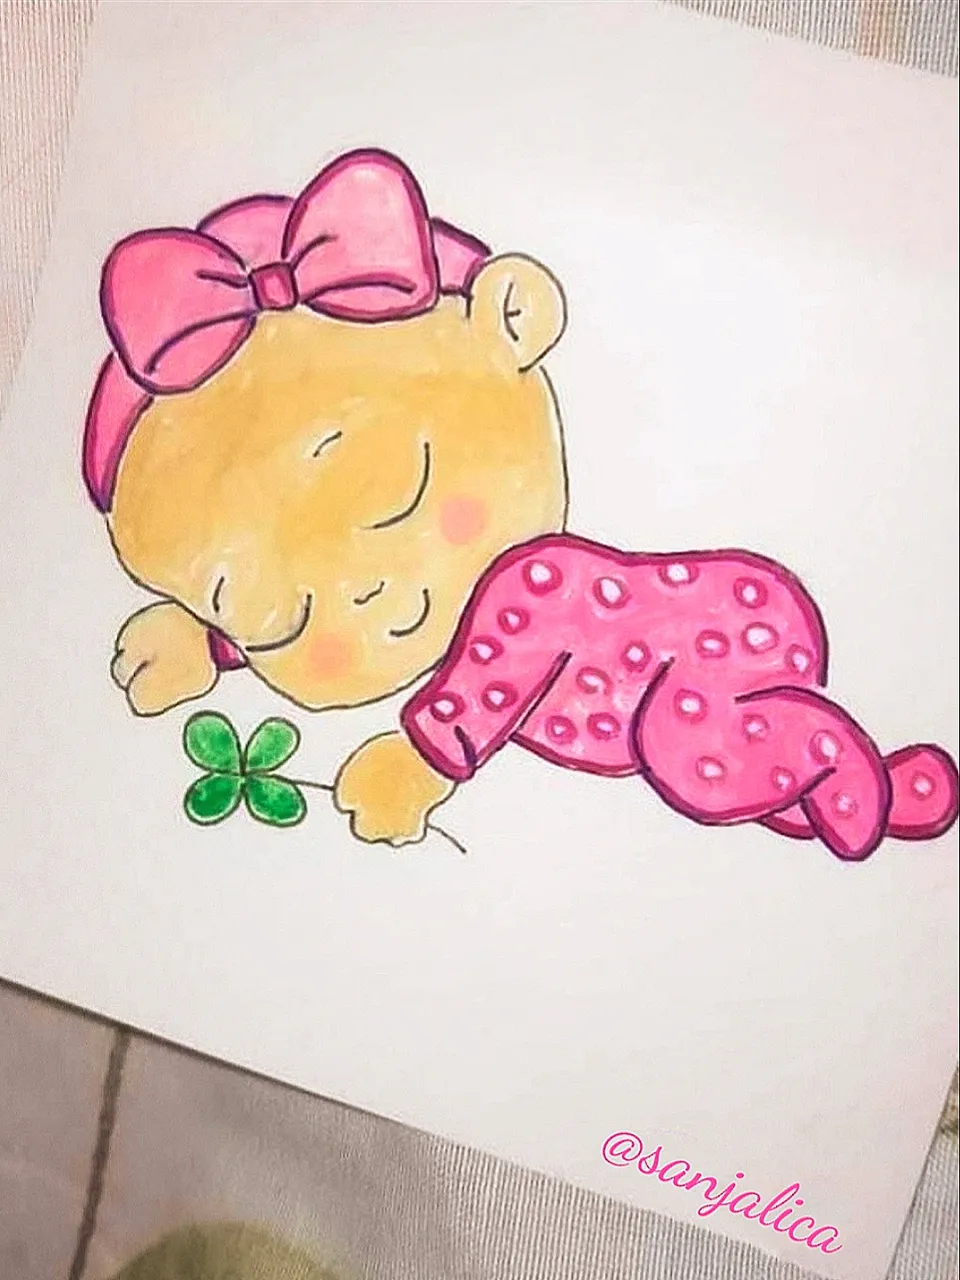 Cute baby girl sketch